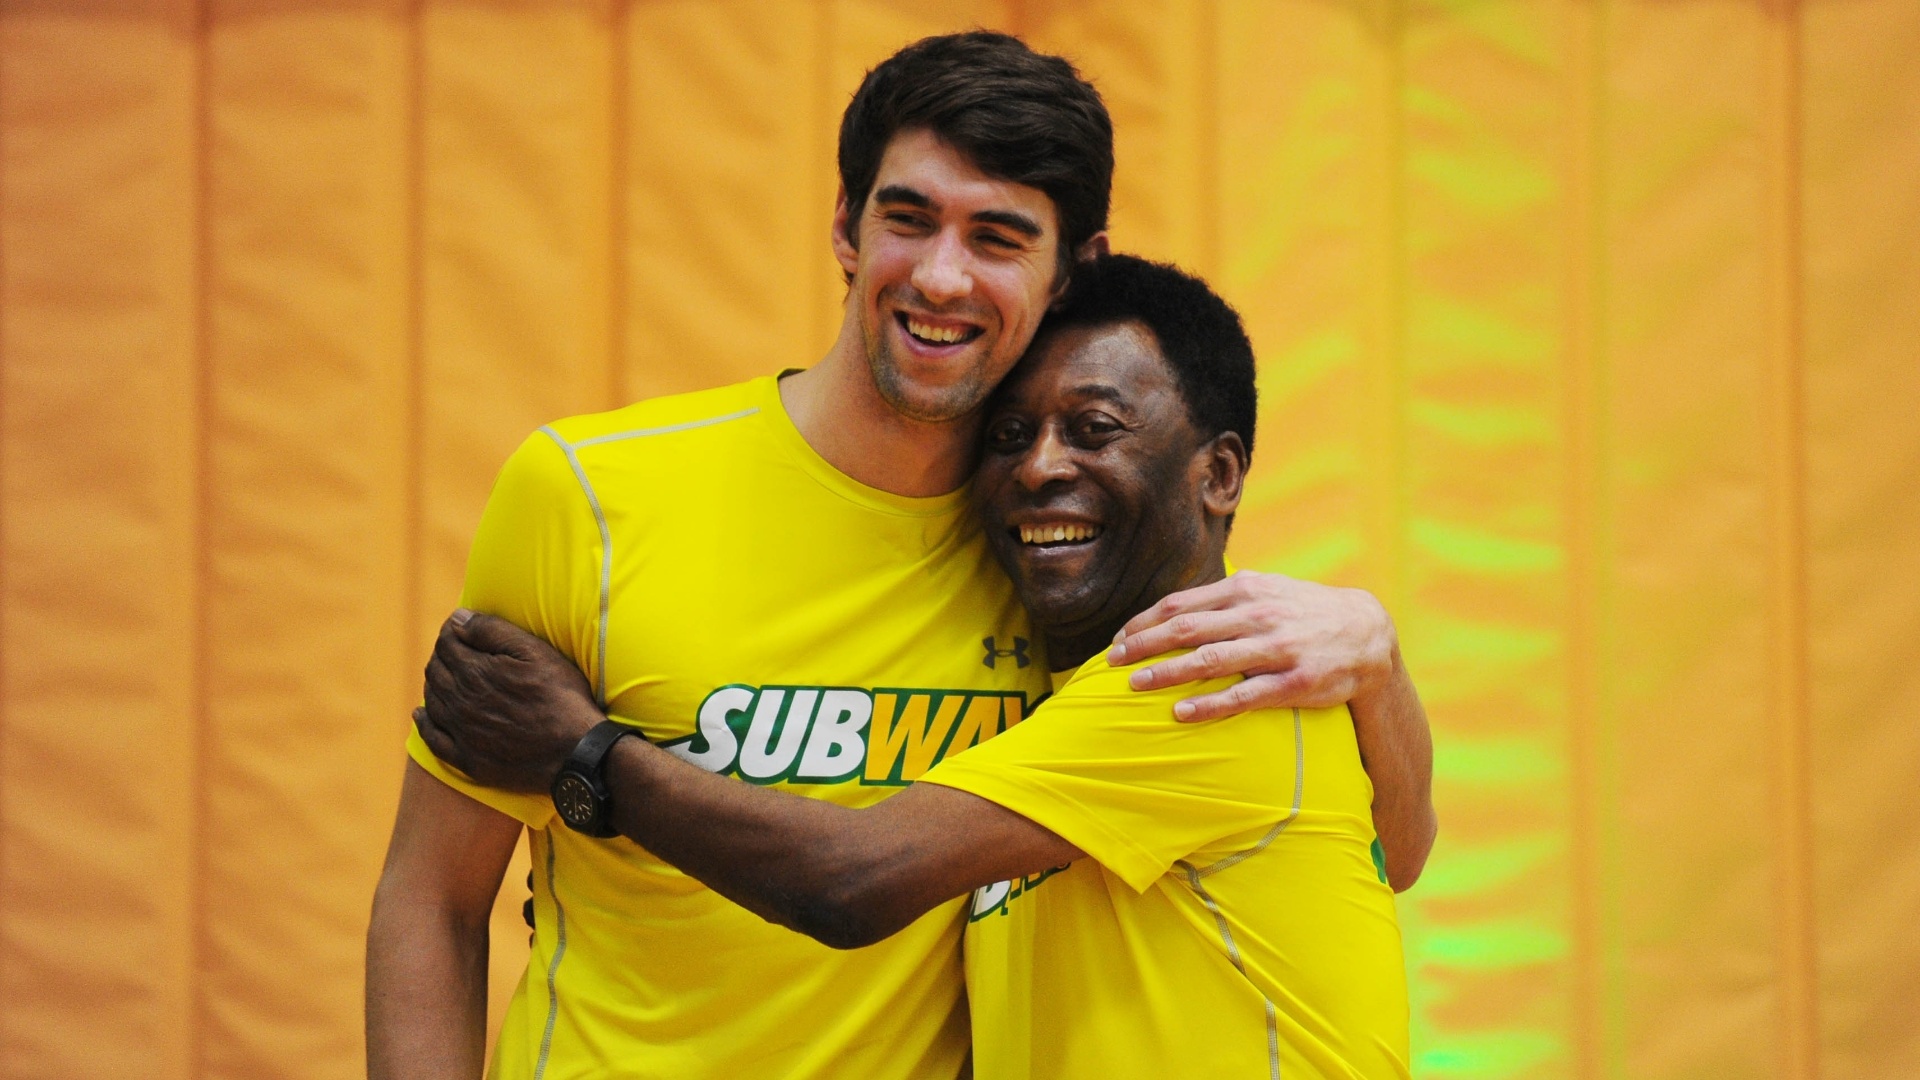 Evento em São Paulo contou com a presença de Pelé e do ex-nadador Michael Phelps